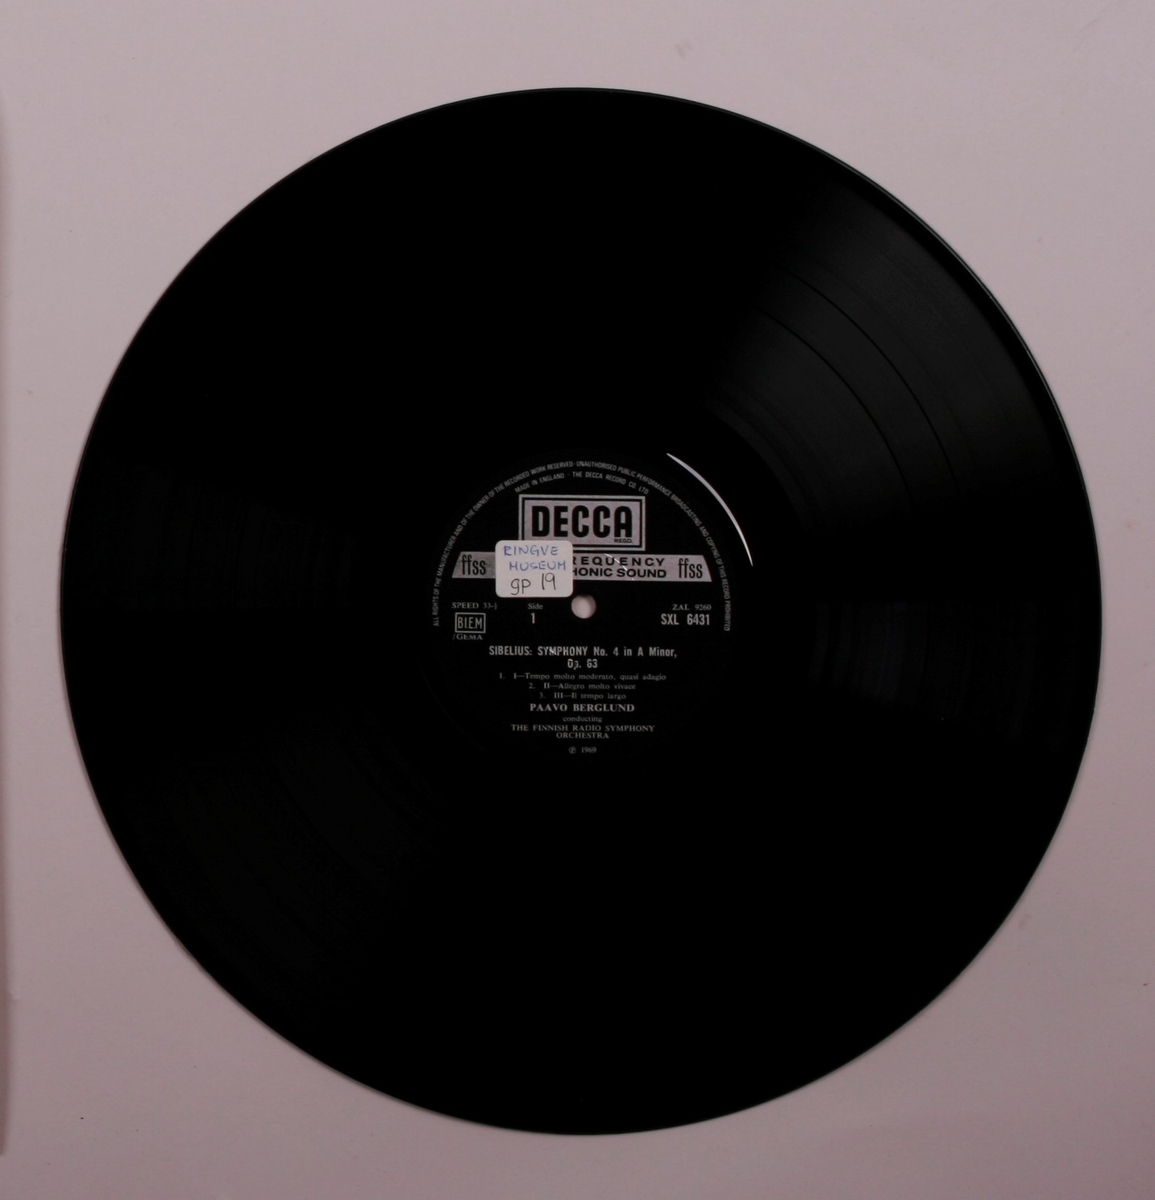 Grammofonplate i svart vinyl og plateomslag i papp. Plata ligger i en papirlomme.
